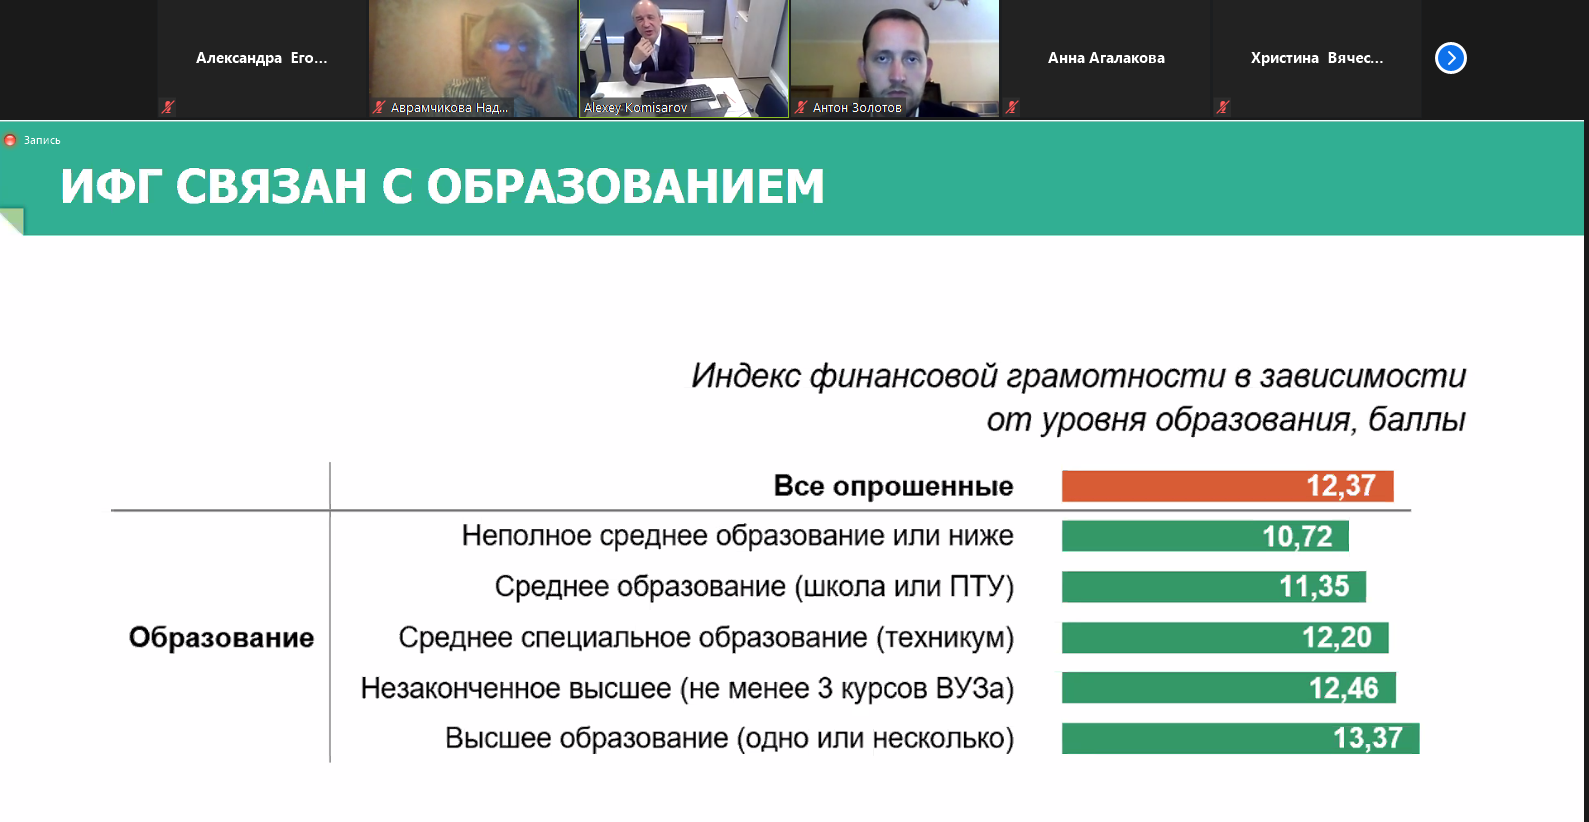 Преподаватели ВУЗов Челябинской области приняли участие в вебинаре «Запрос различных групп населения на финансовую грамотность»